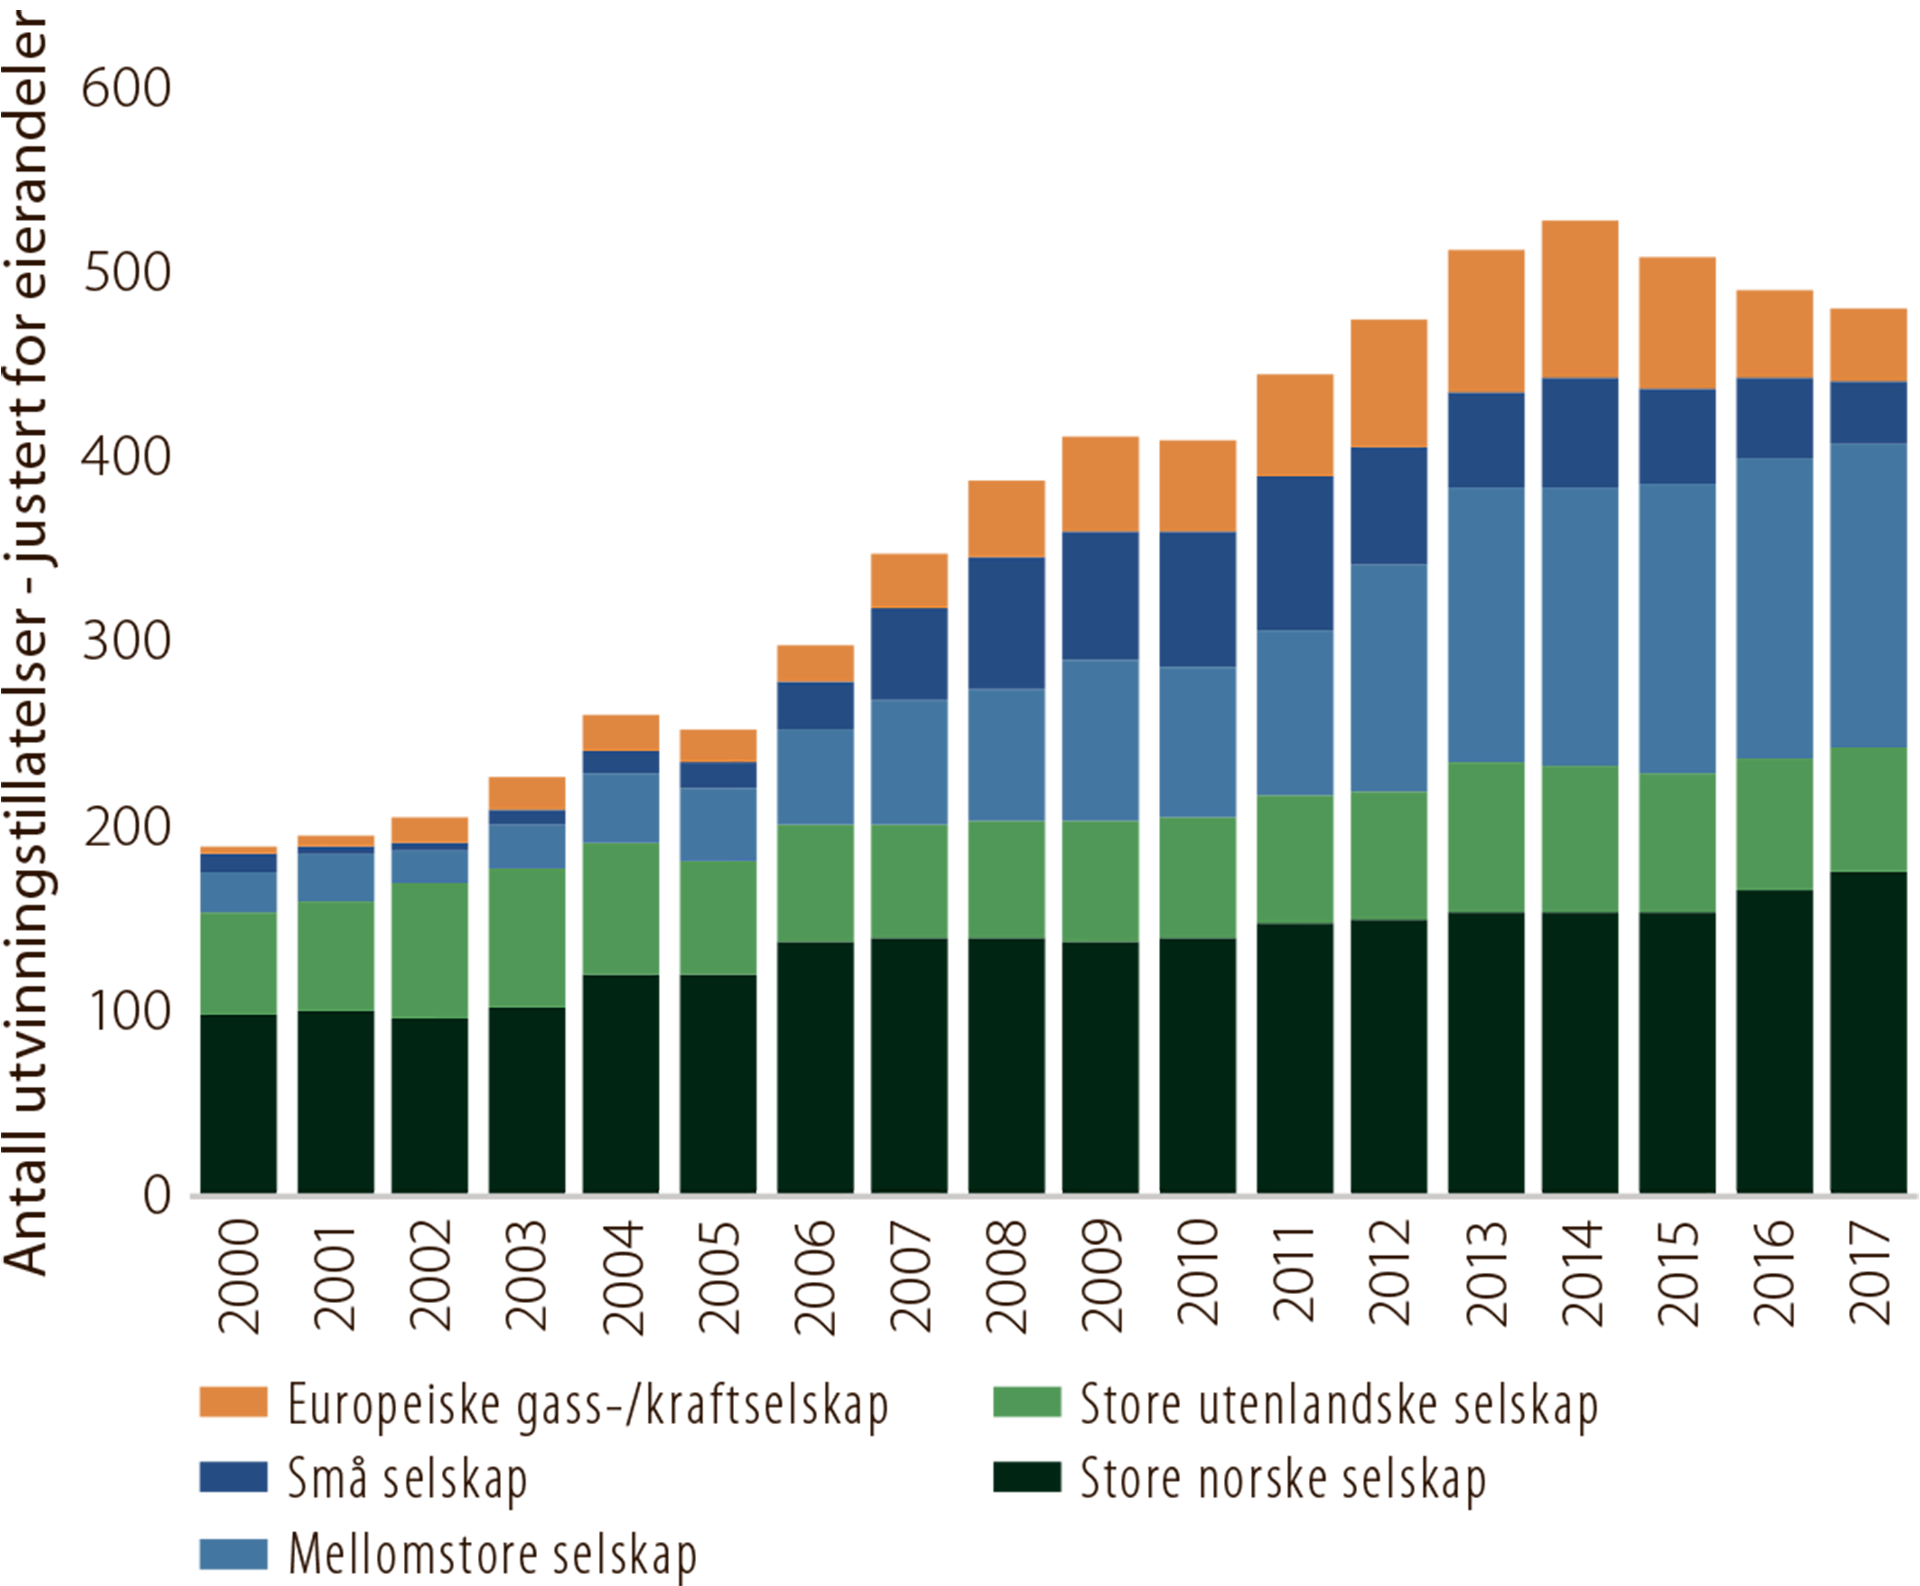 Figur 5.4 Antall utvinningstillatelser fordelt på selskapstype, 2000-2017